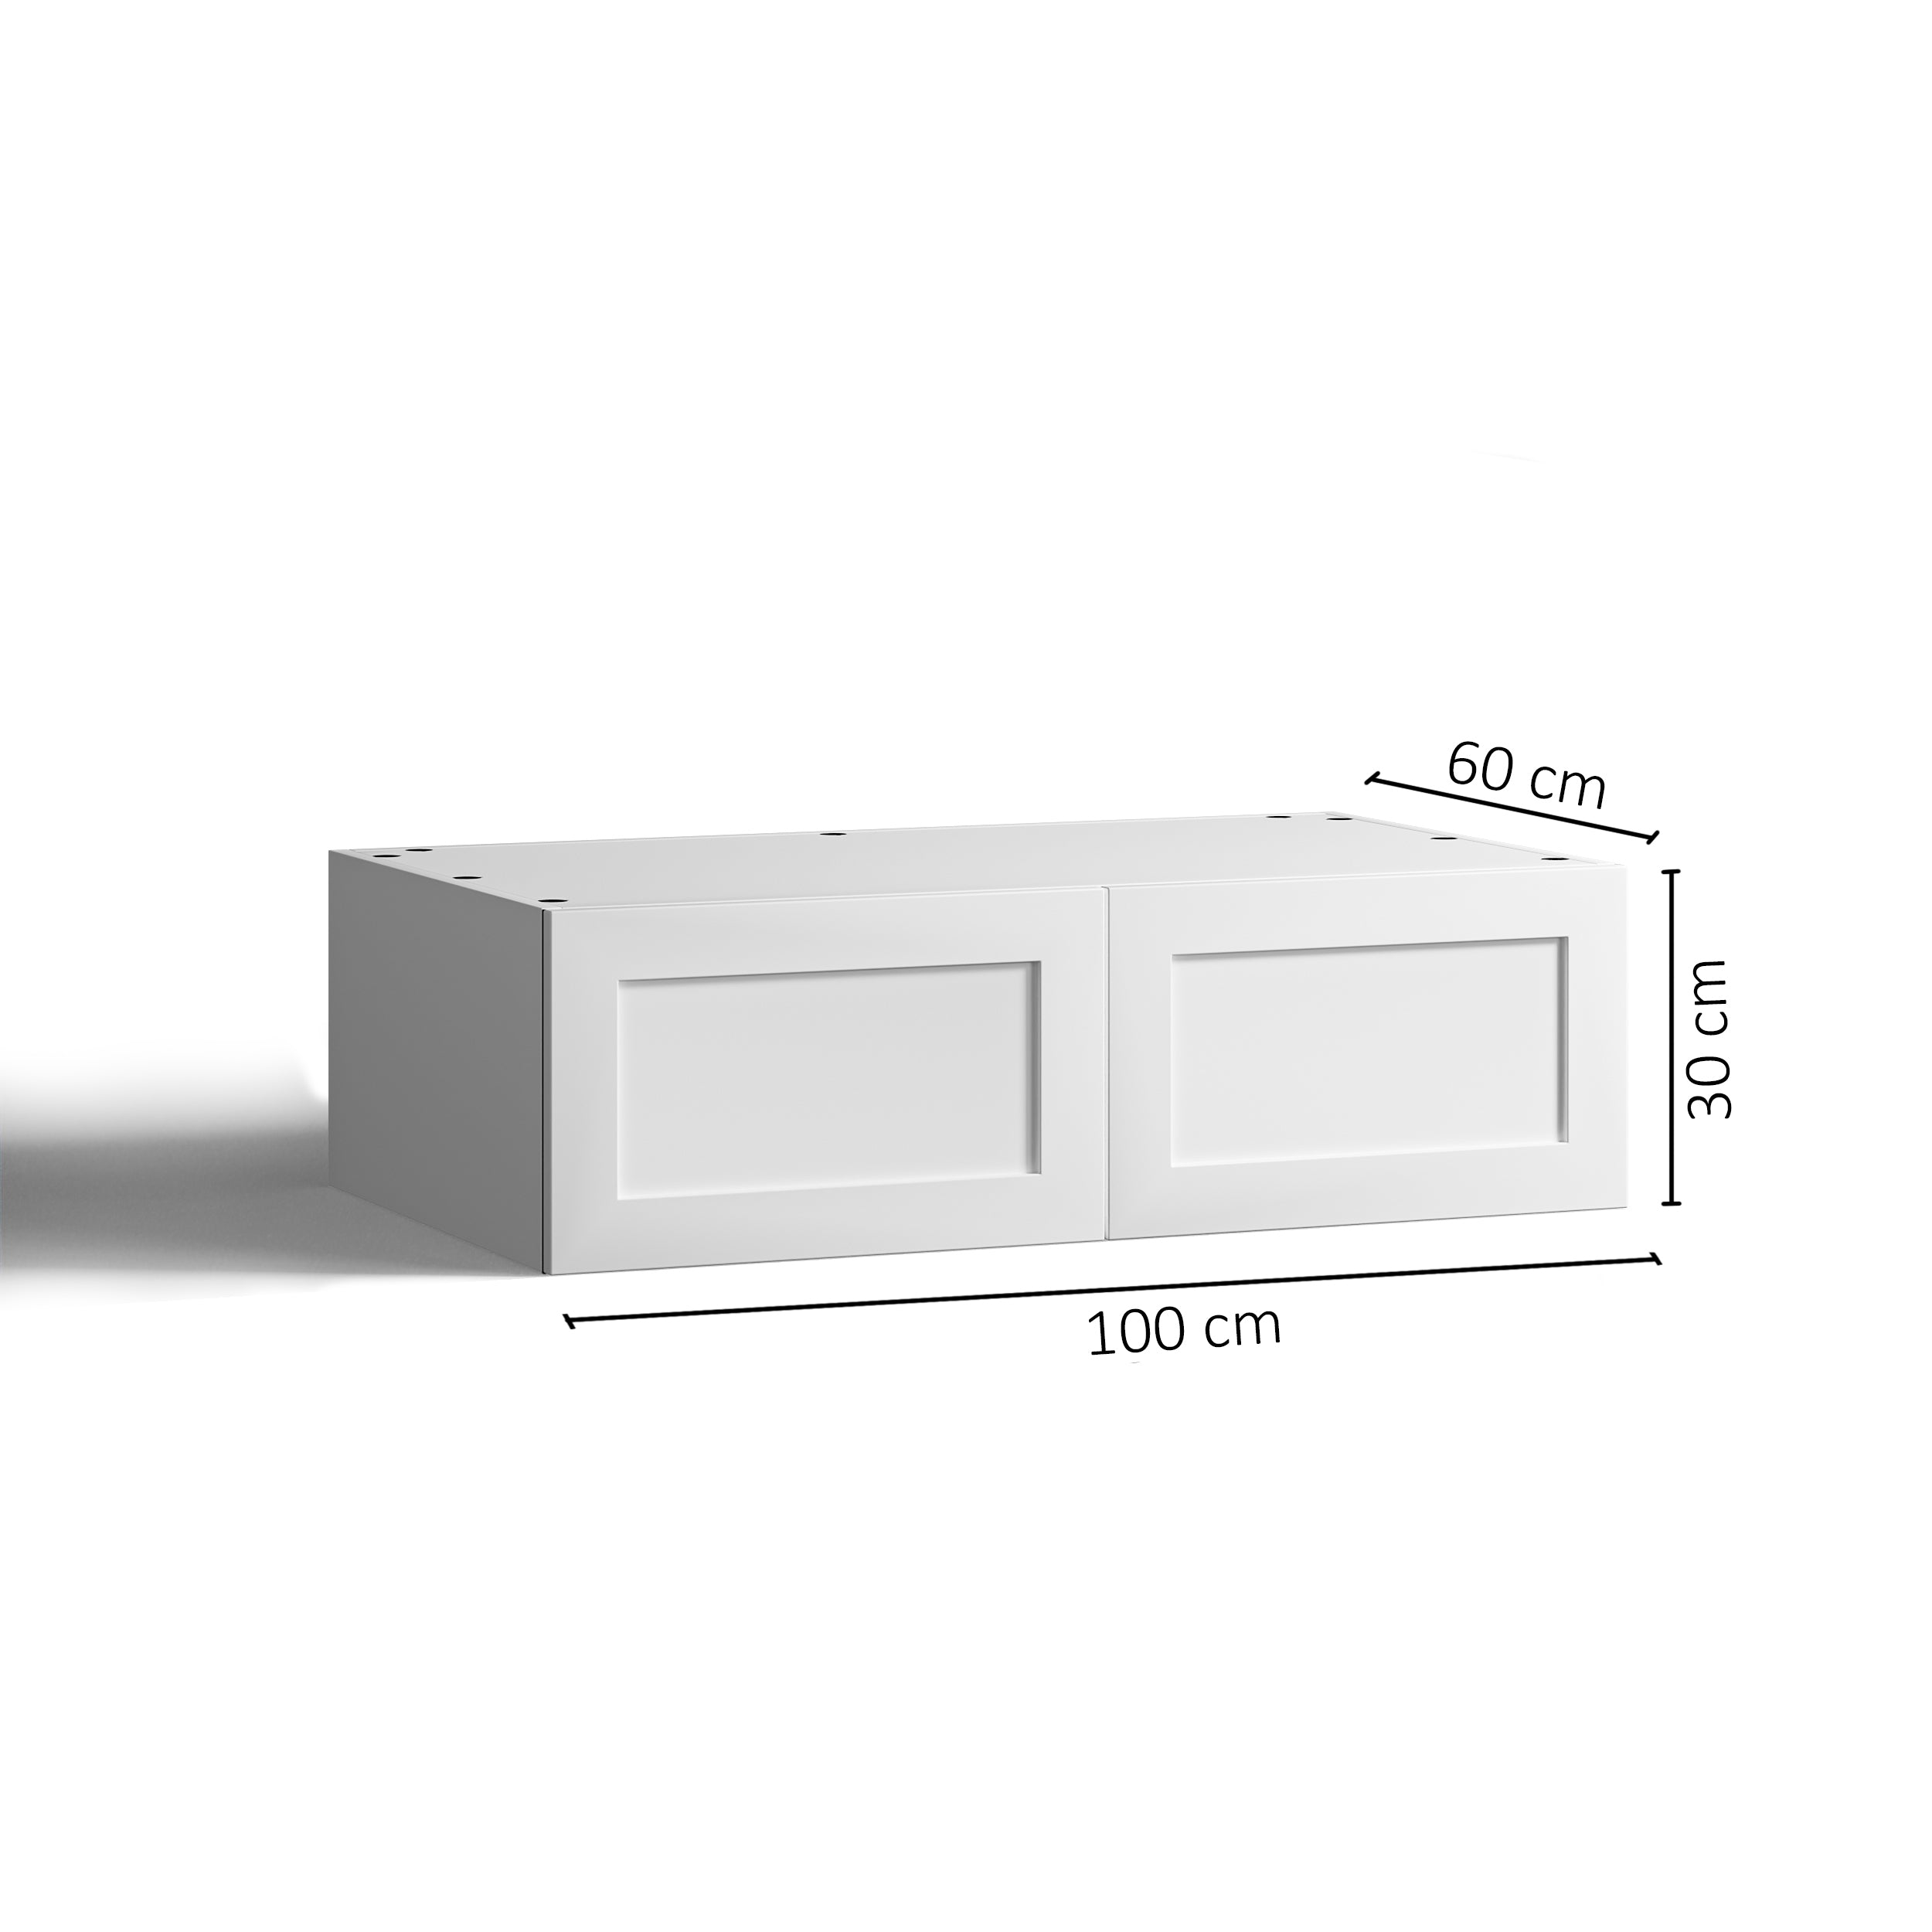 100x30 - Cabinet (58cm D) w 2 Doors - Shaker - PAX